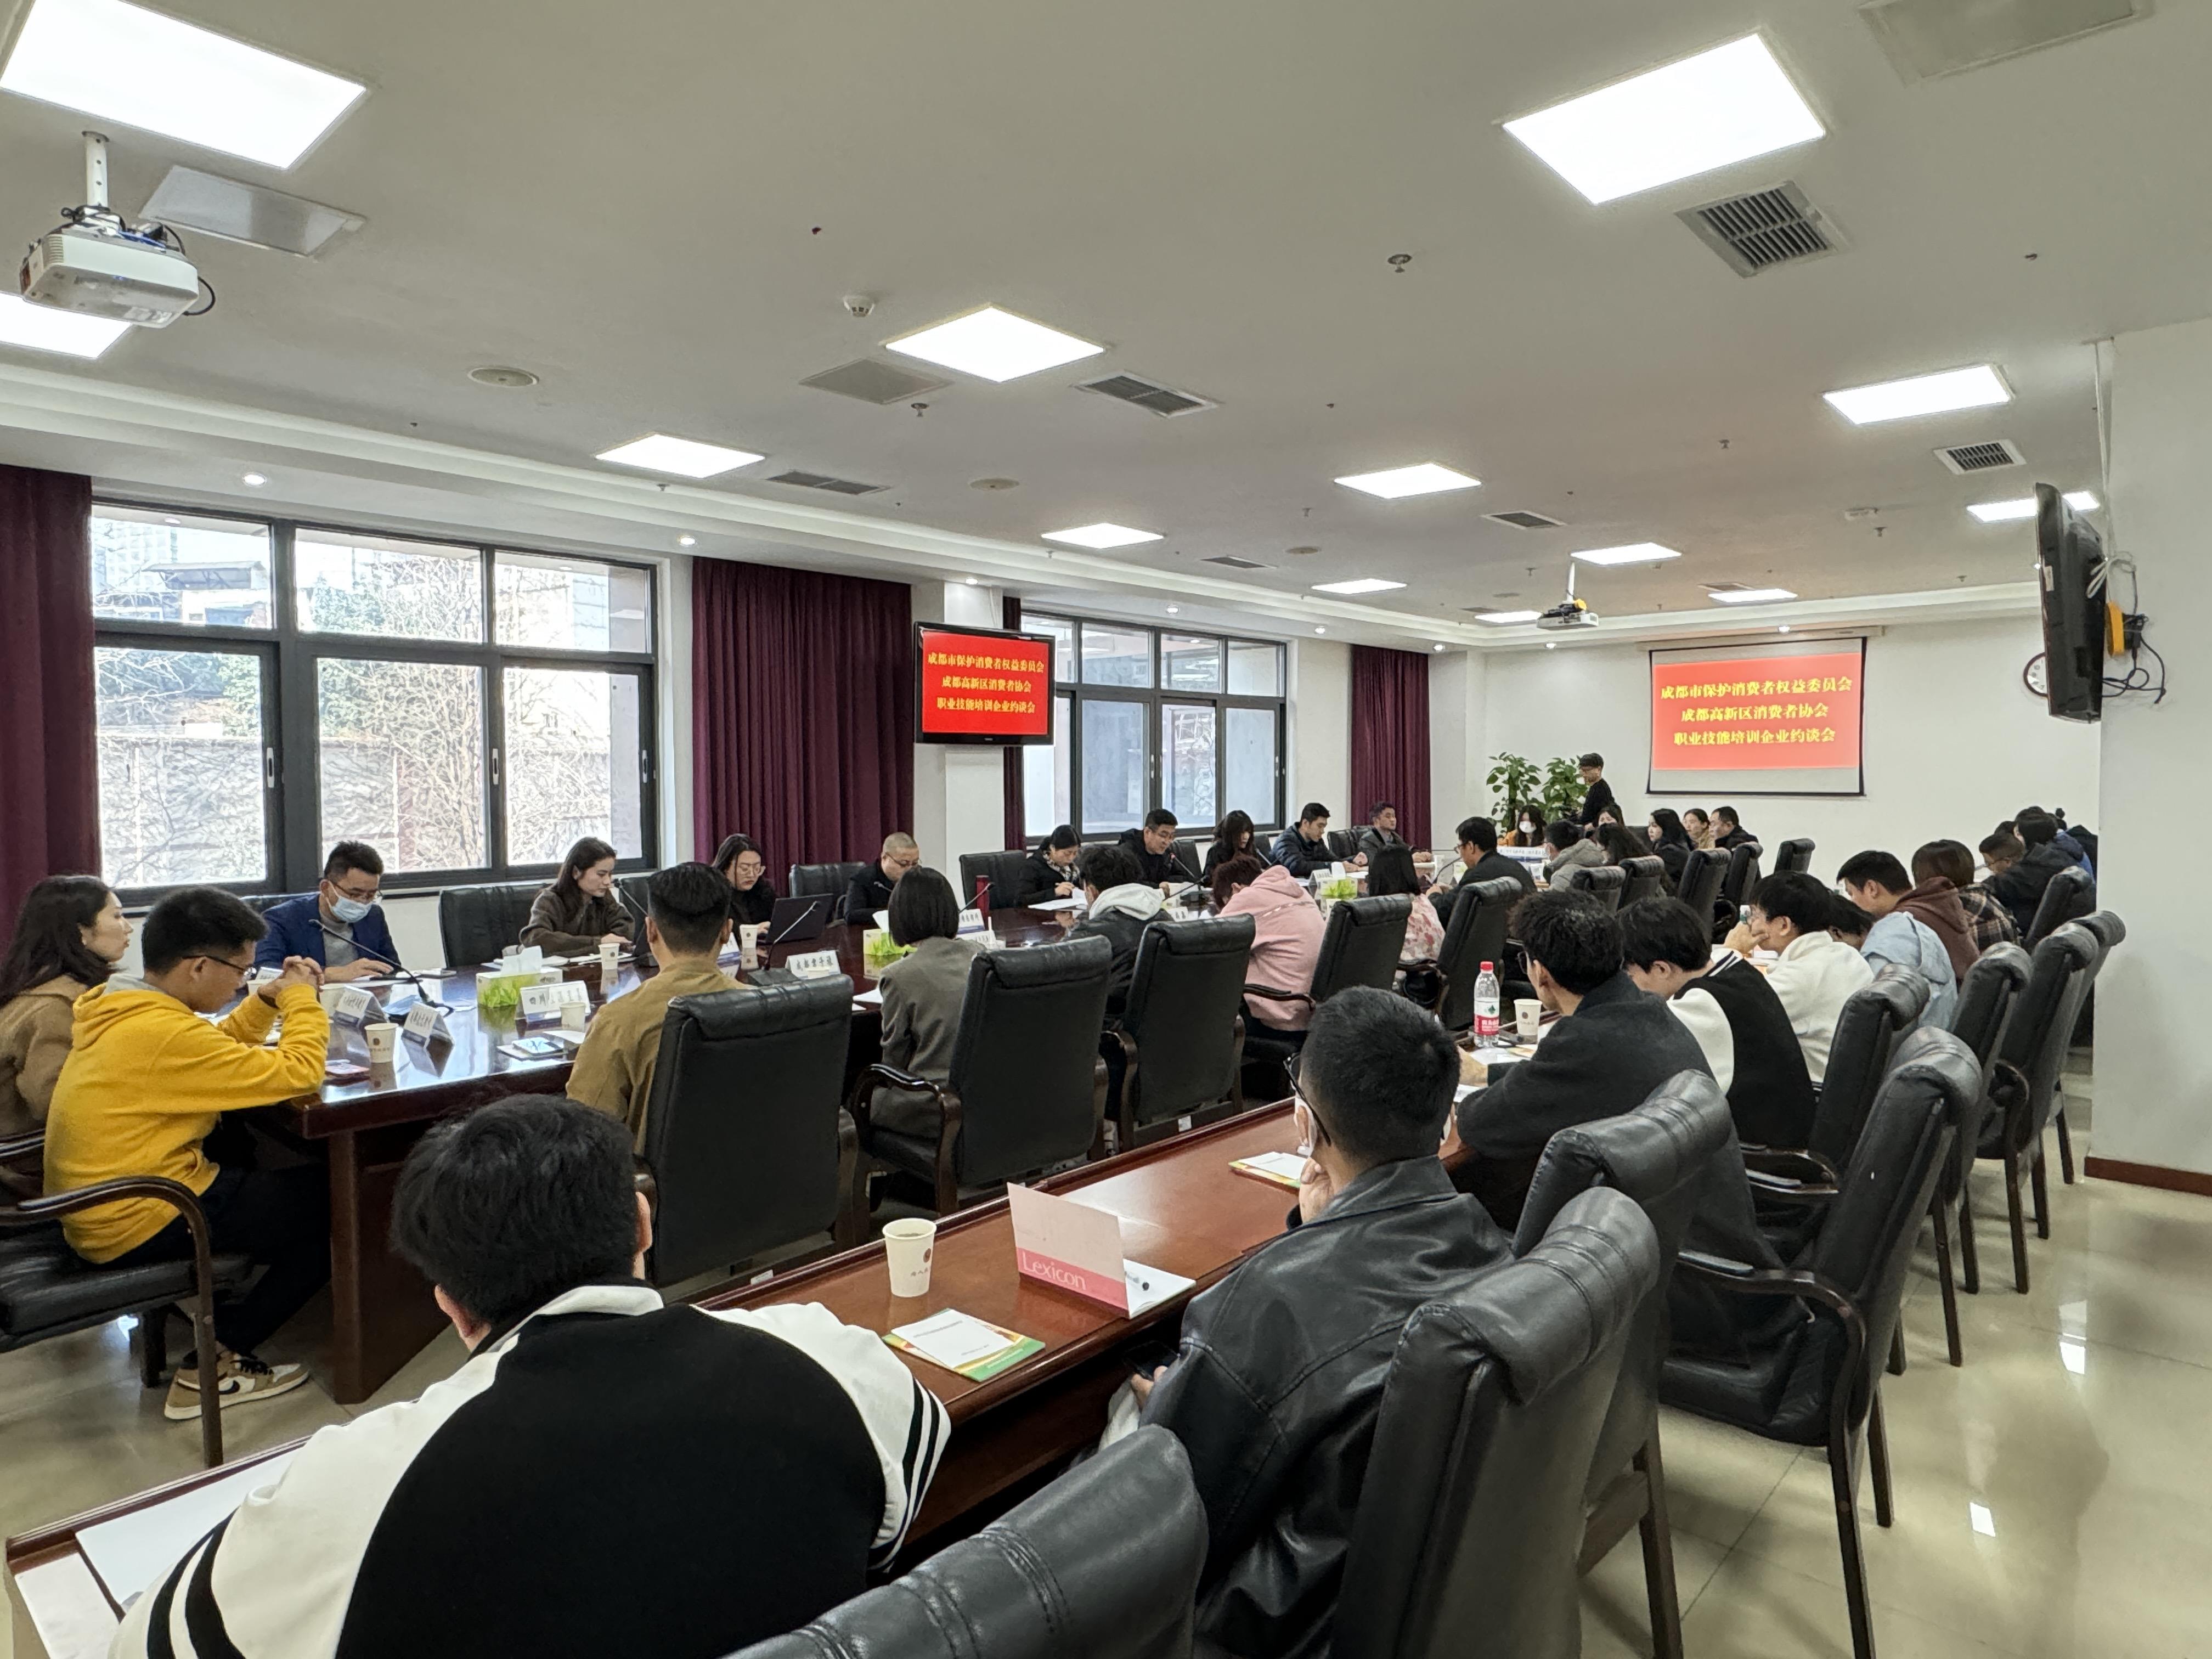 四川省成都市消委会、高新区消协联合约谈职业技能培训企业